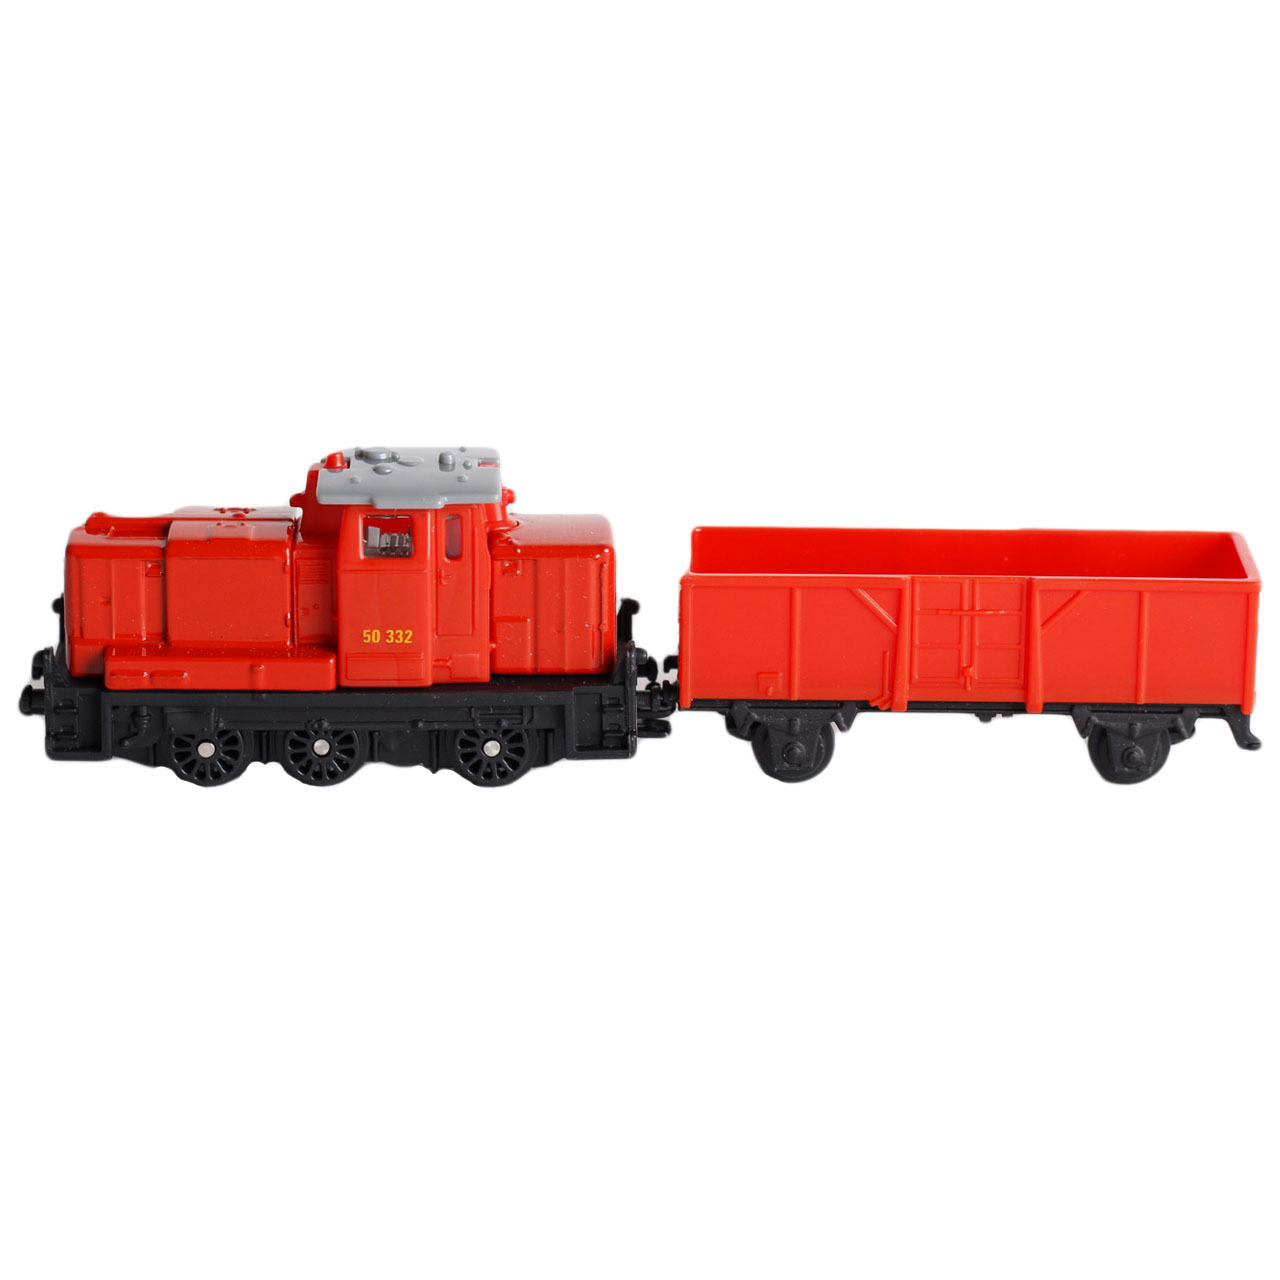 قطار بازی سیکو مدل Locomotive with Freight Waggon